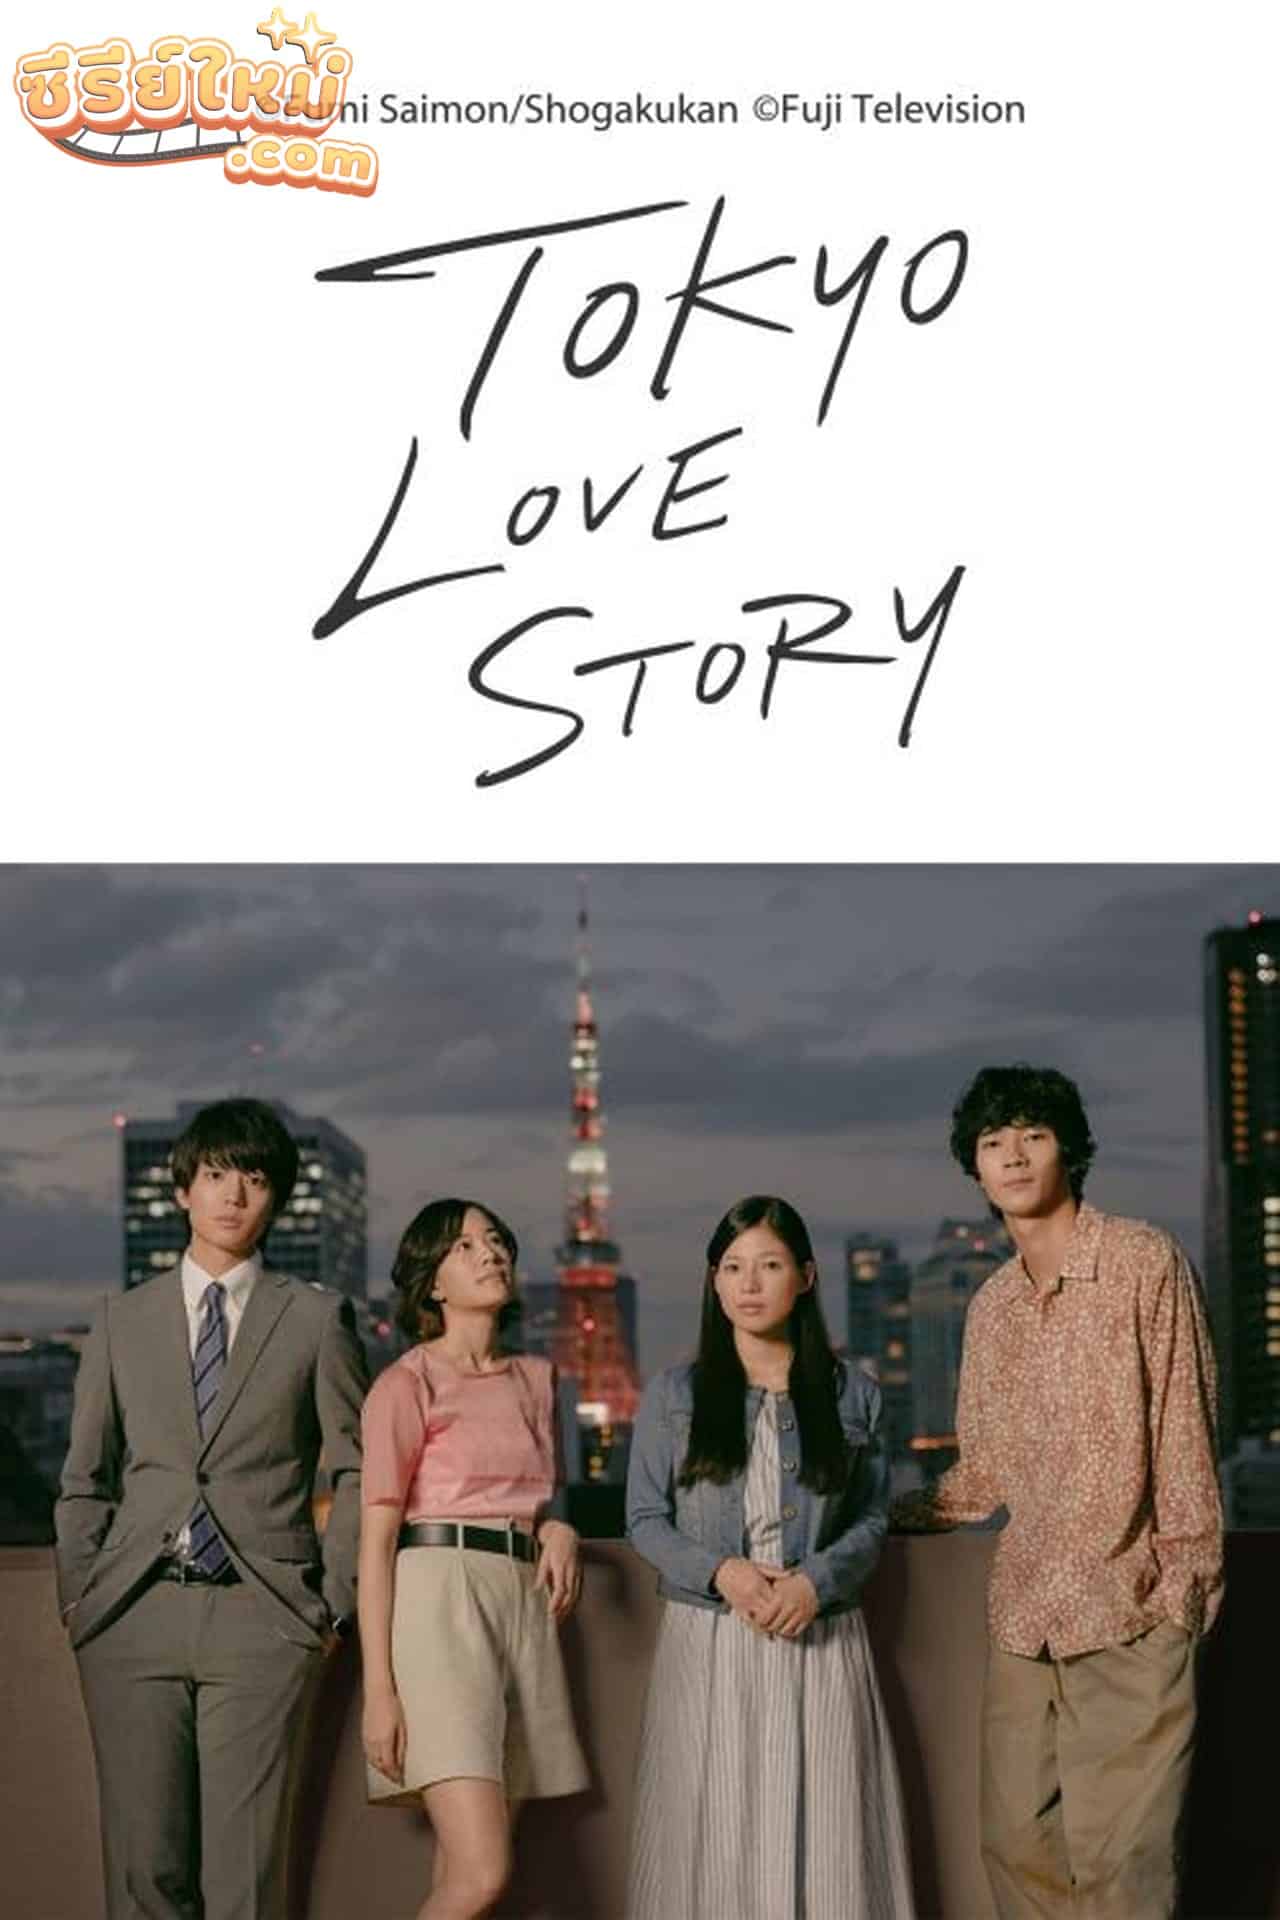 Tokyo Love Story กลรักกรุงโตเกียว (2020)